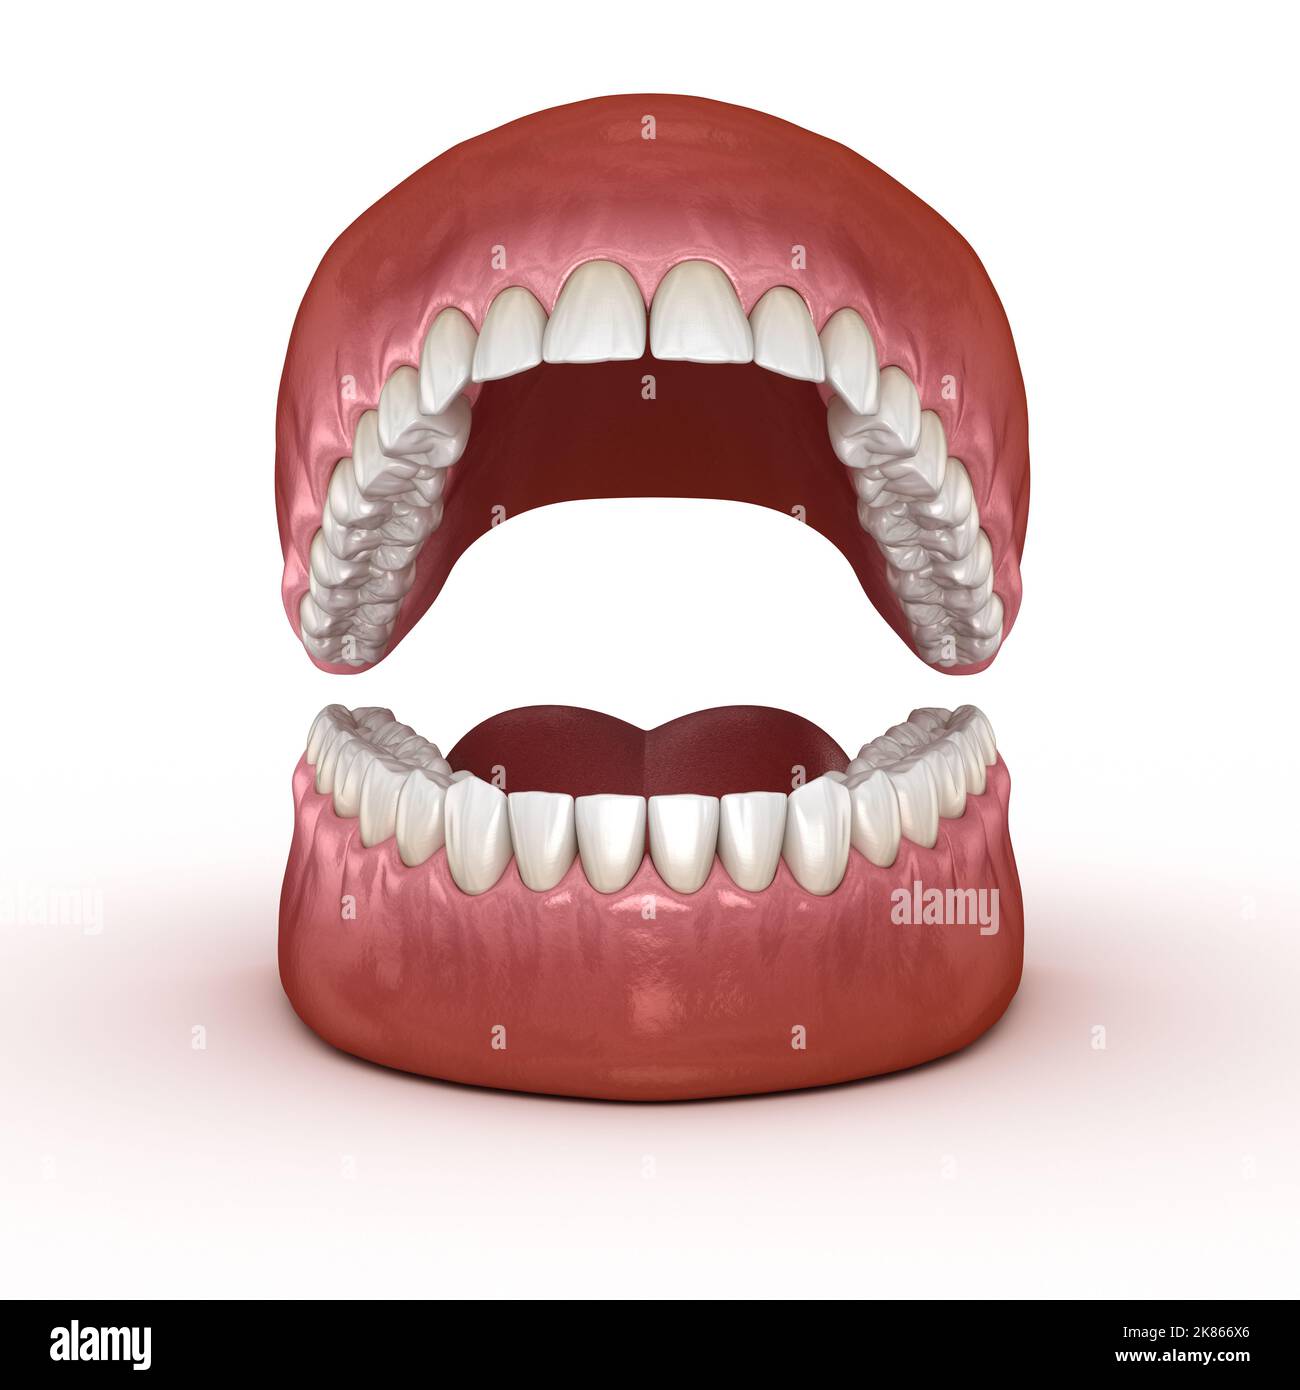 Zahnmedizinische Anatomie - Geöffnet Zahnersatz. Medizinisch genauen zahnmedizinischen 3D-Darstellung Stockfoto